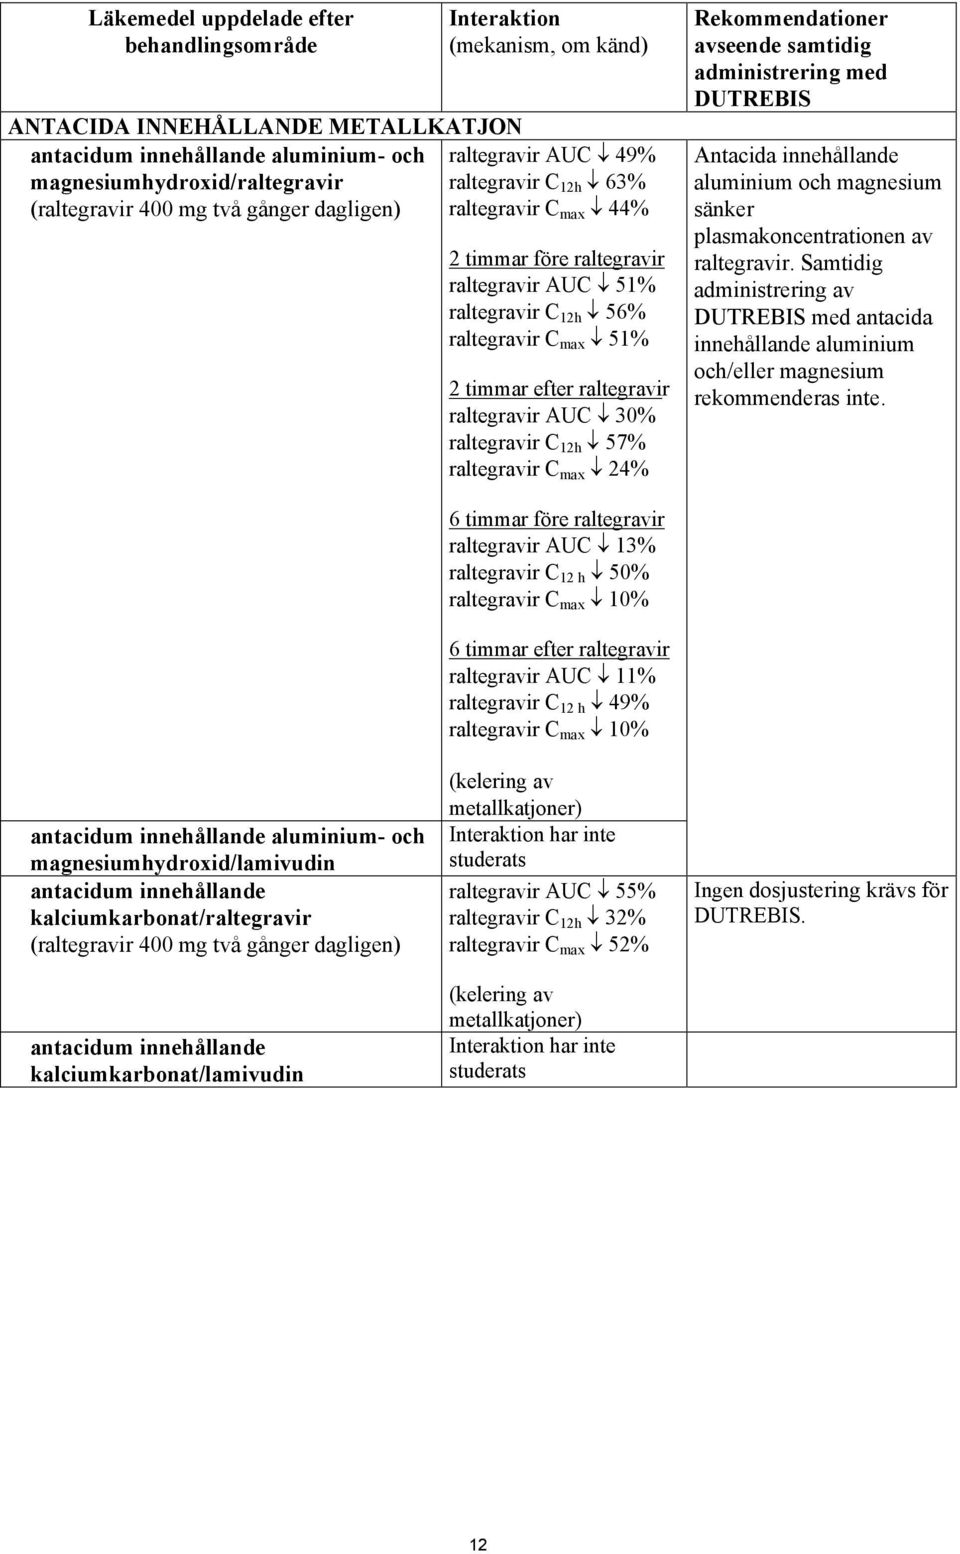 raltegravir raltegravir AUC 30% raltegravir C 12h 57% raltegravir C max 24% Rekommendationer avseende samtidig administrering med DUTREBIS Antacida innehållande aluminium och magnesium sänker